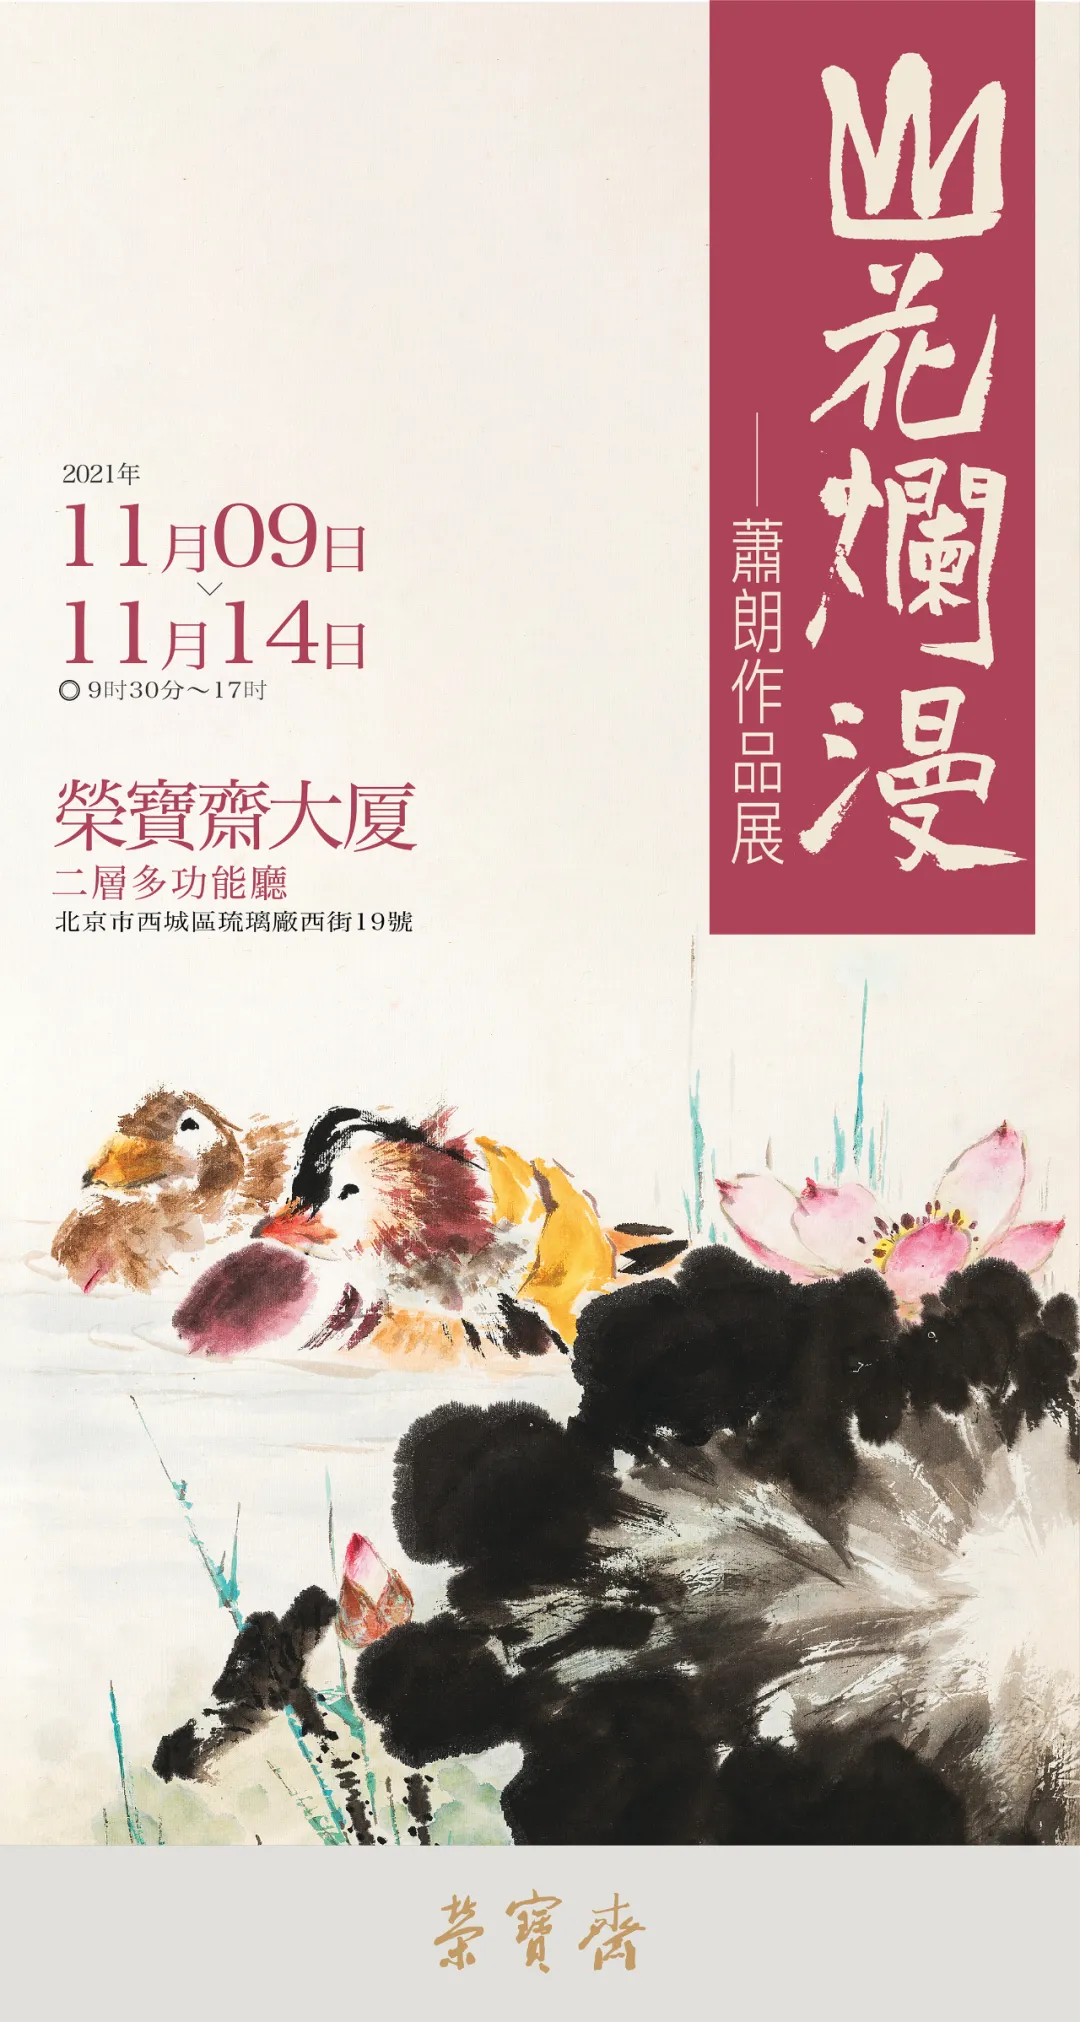 展讯 |“山花烂漫·萧朗作品展”将于11月9日在荣宝斋大厦开展